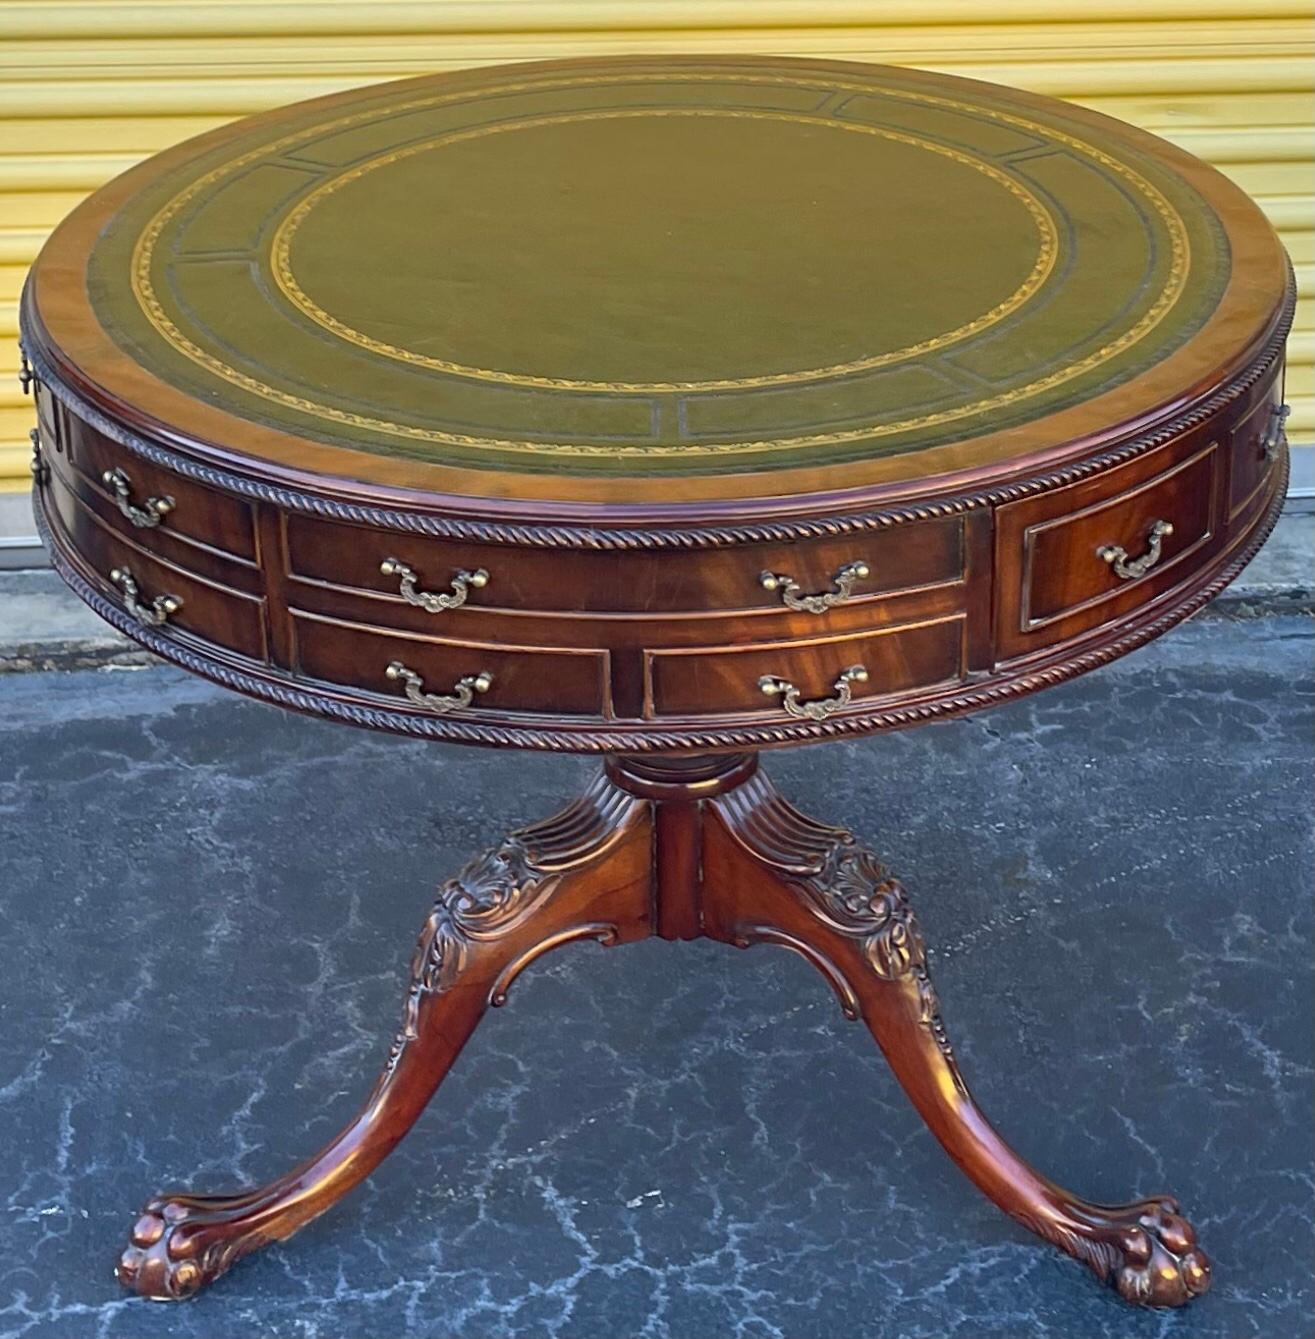 Il s'agit d'une belle table à tambour anglaise de style géorgien. Il est doté d'un haut en cuir vert. Le cadre est en acajou sculpté avec des ferrures en laiton. Les tiroirs sont dotés d'une construction à queue d'aronde. Il s'agit d'une